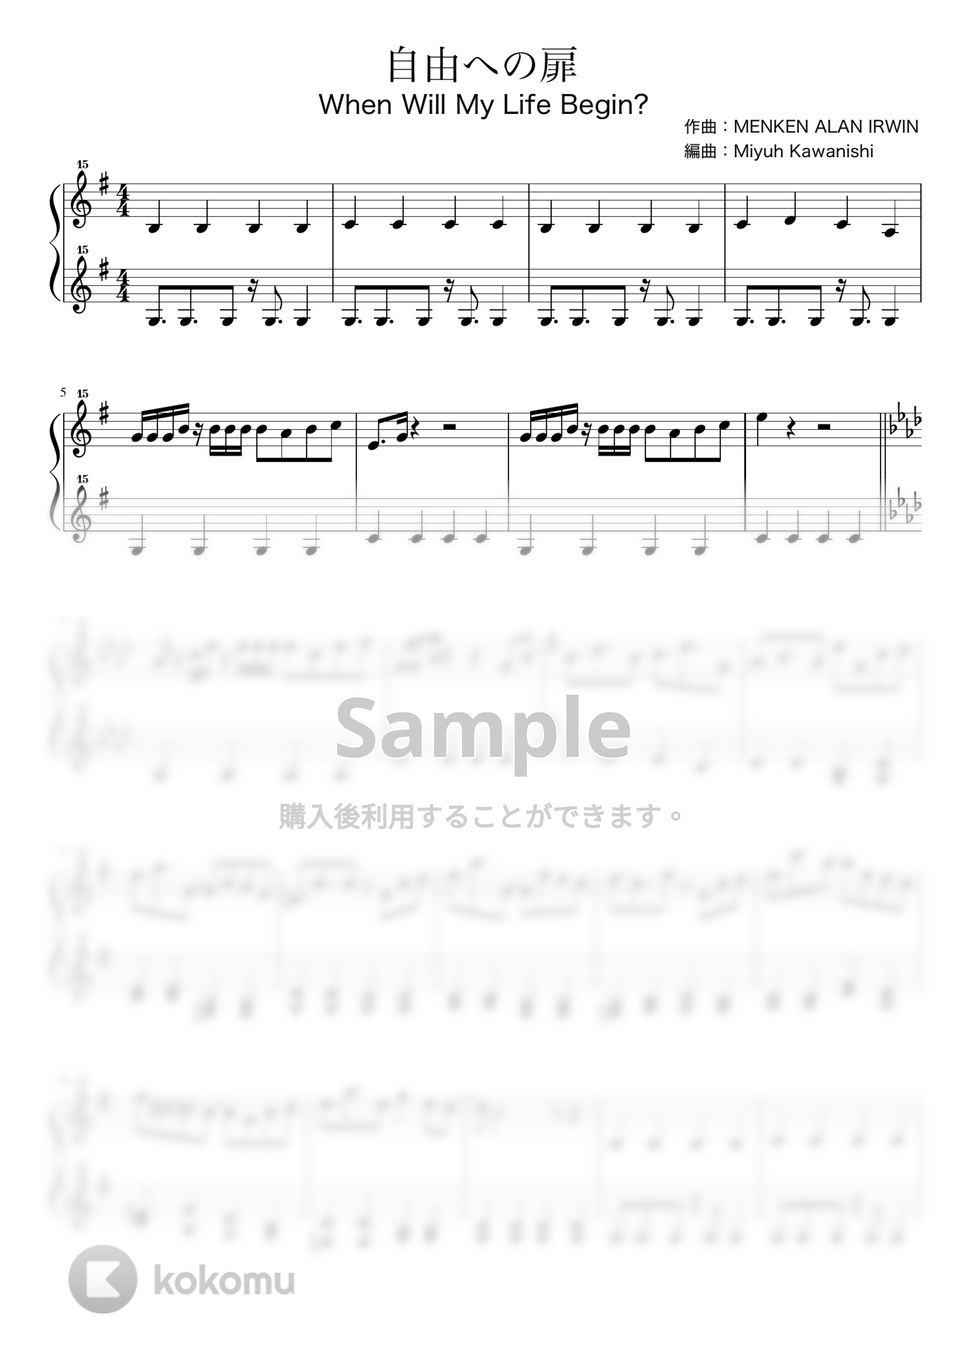 アラン・メンケン - 自由への扉 (塔の上のラプンツェル / トイピアノ / 32鍵盤) by 川西三裕